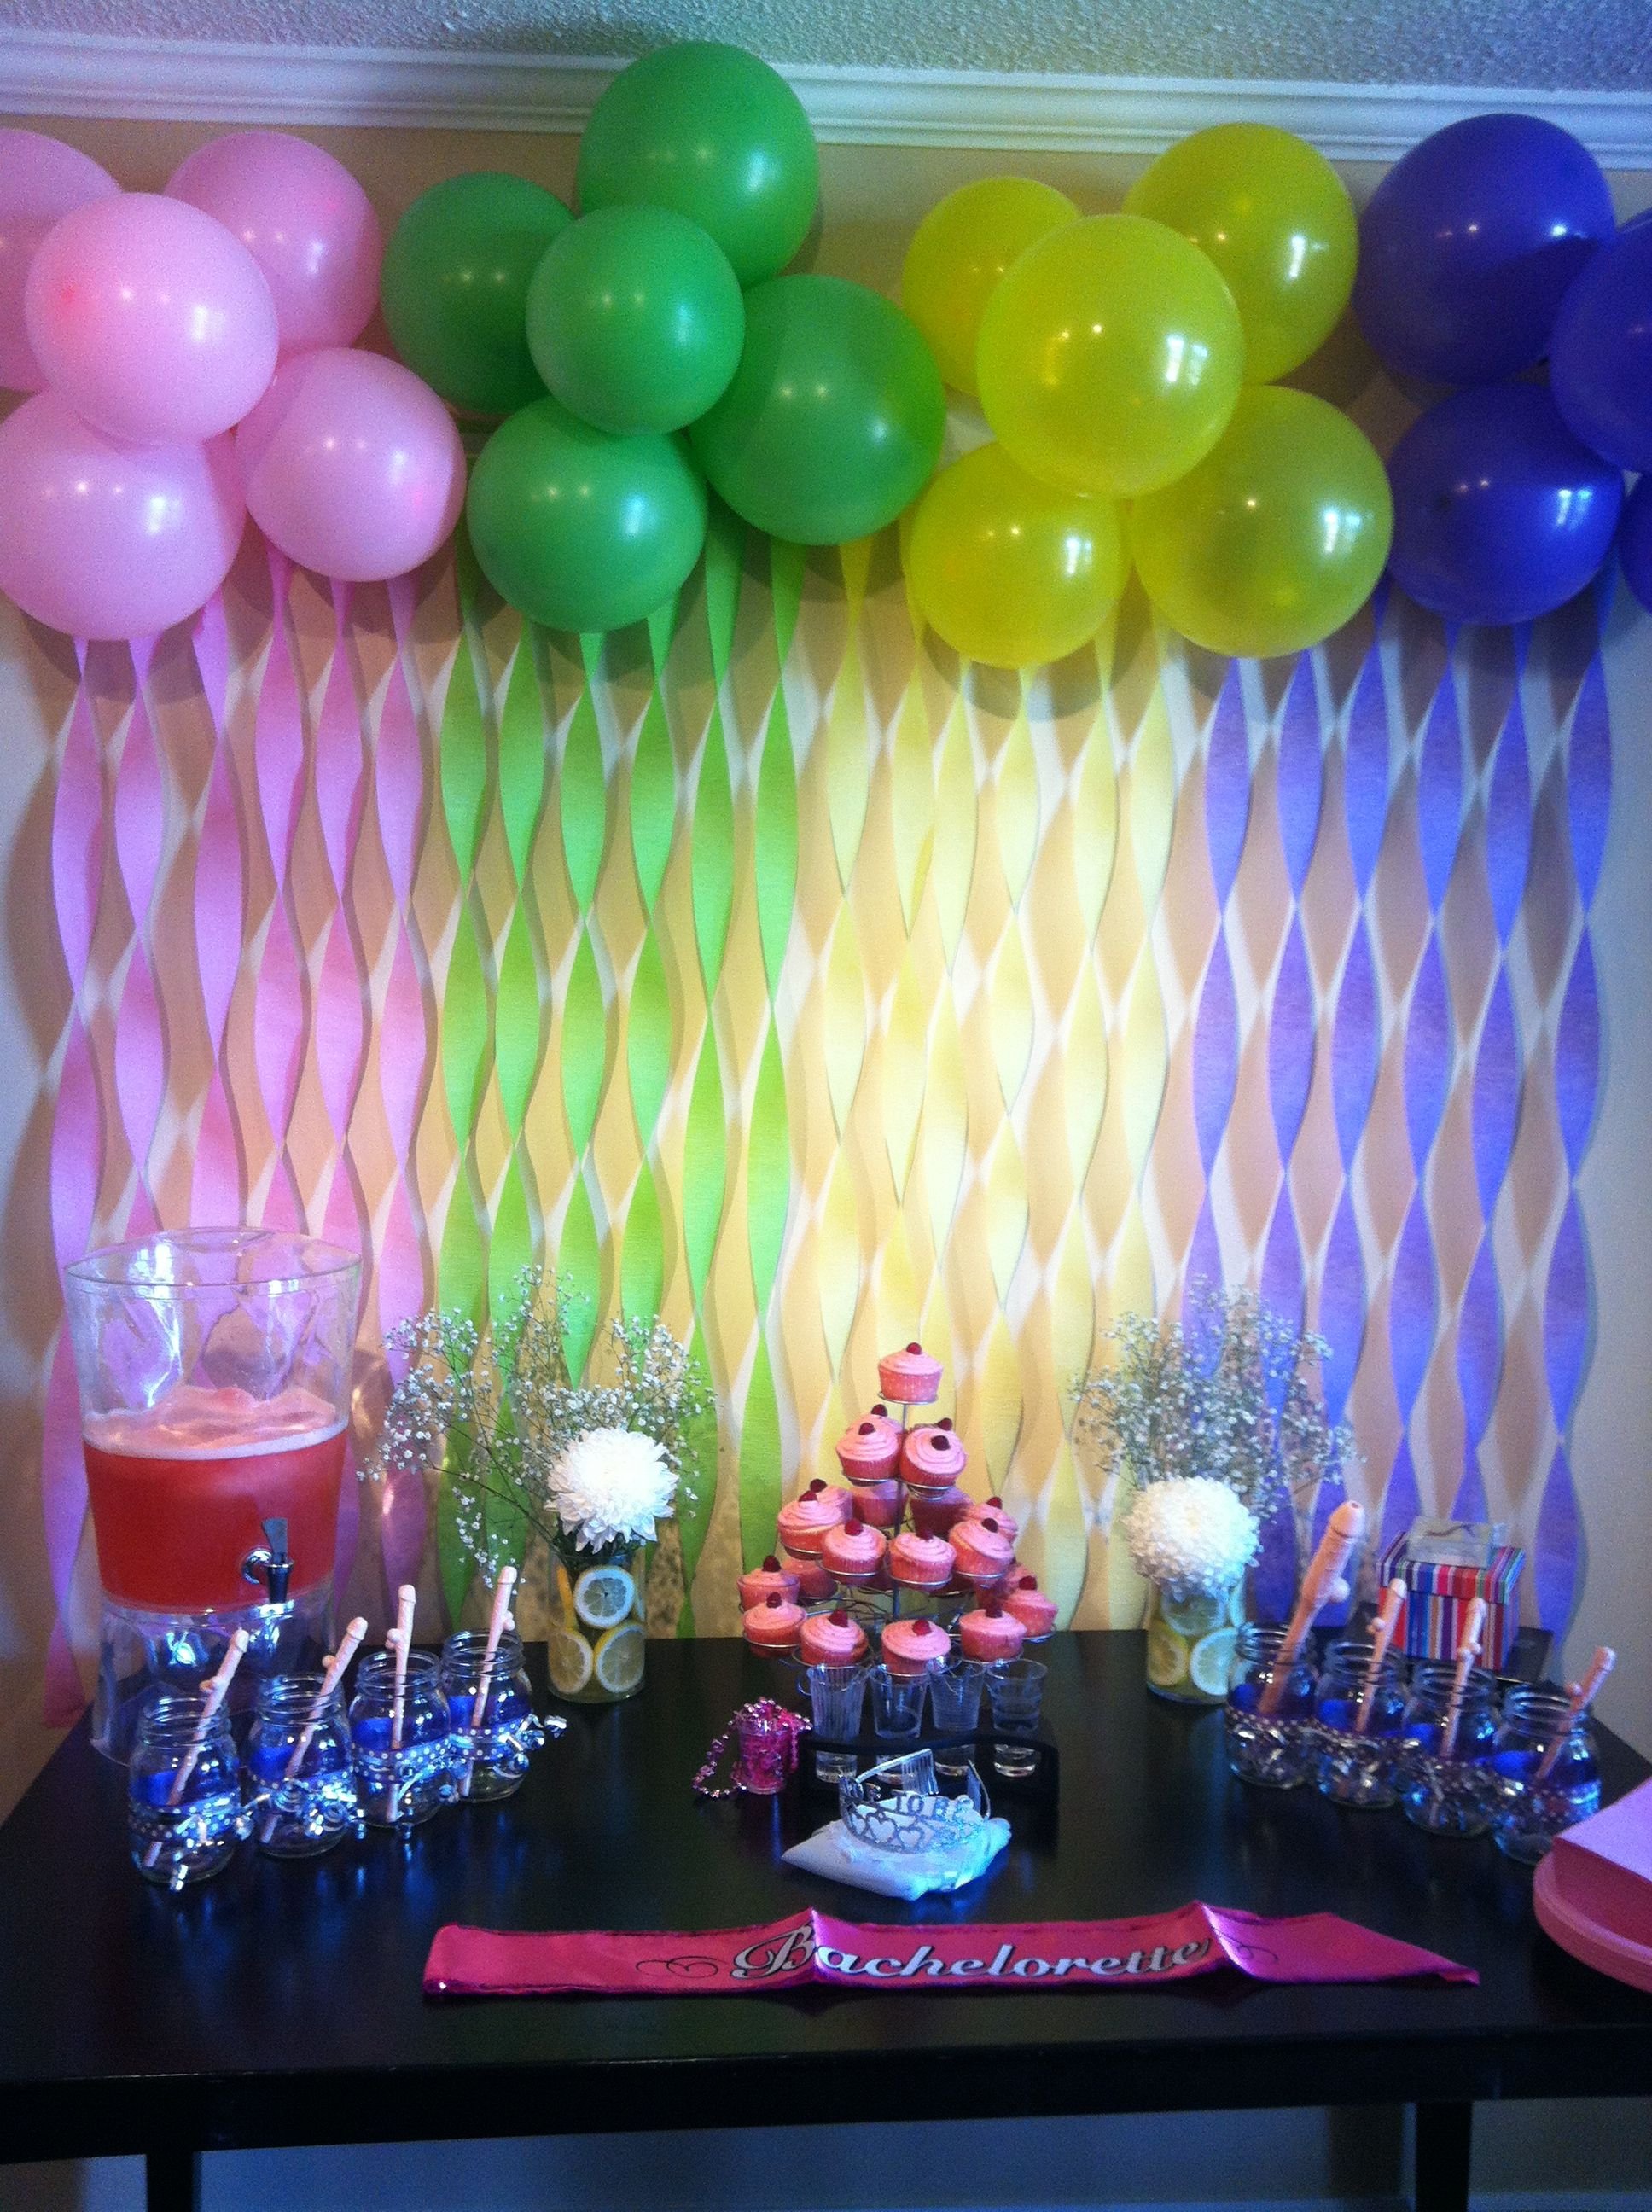 украсить комнату на день рождения мальчику шарами